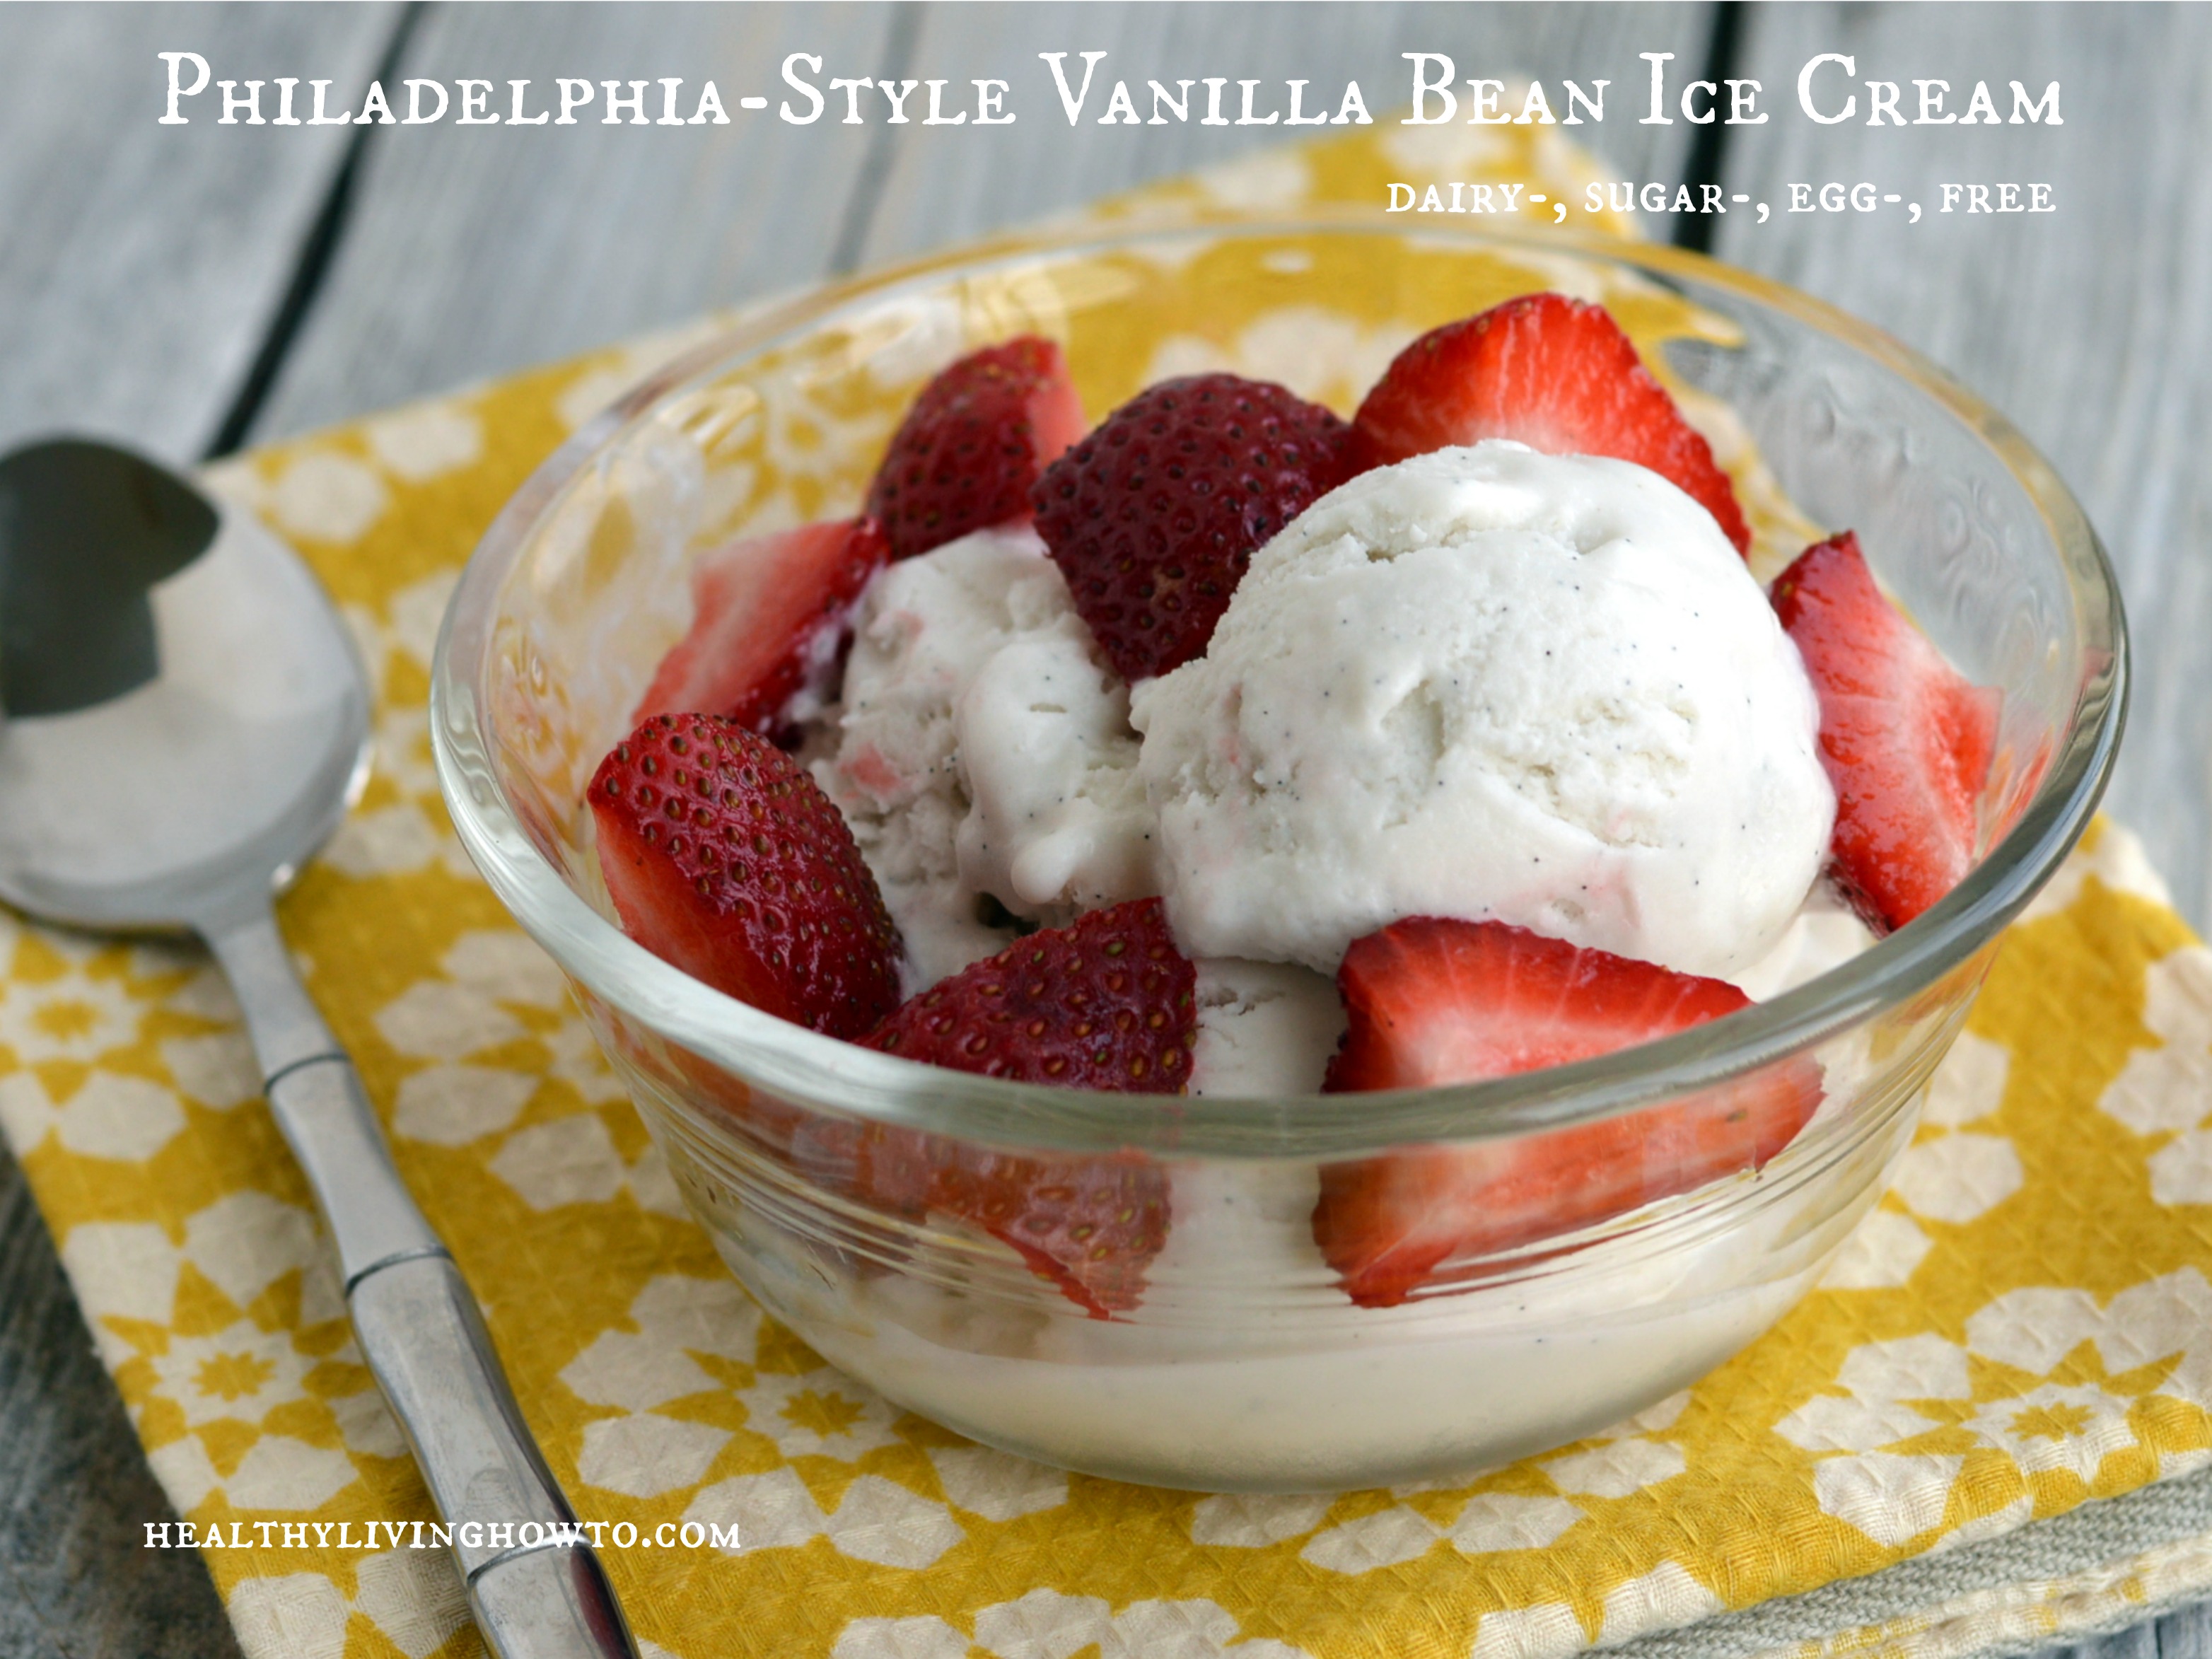 Philadelphia-Style Vanilla Bean Ice Cream